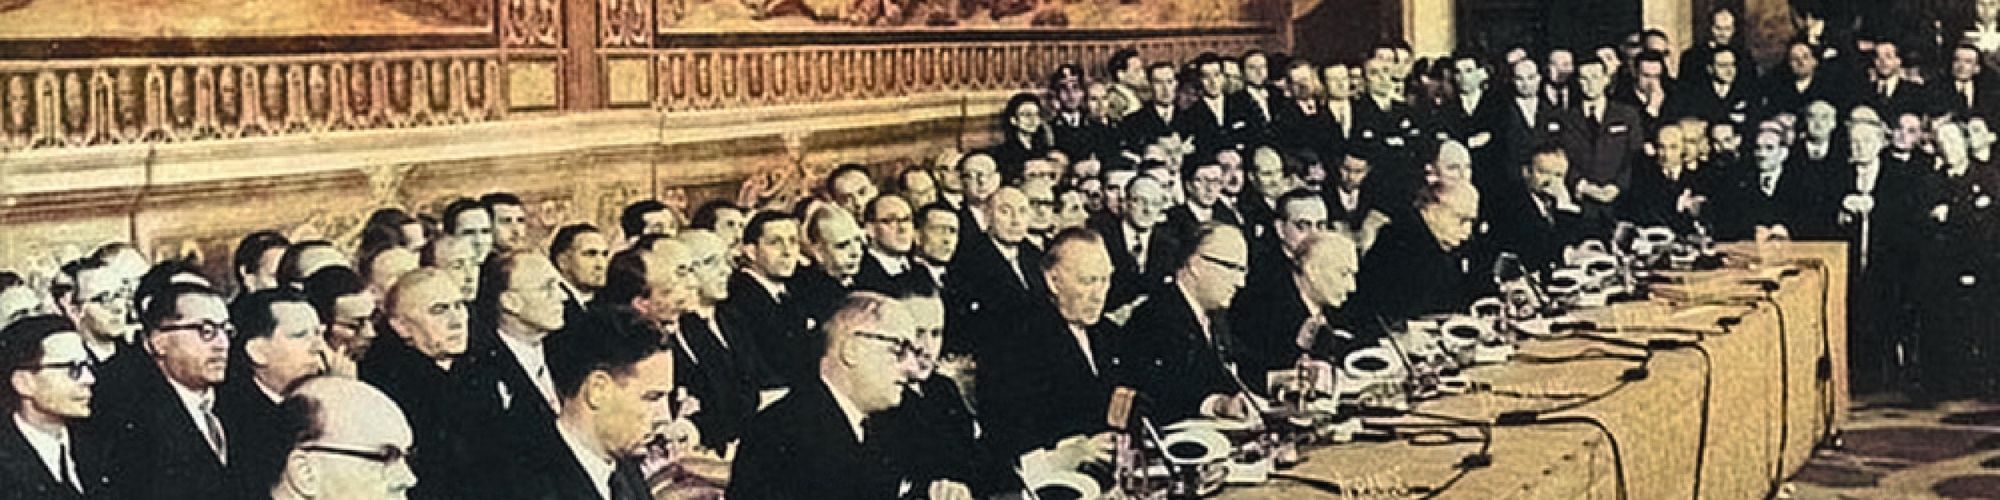 Signature du Traité de Rome instituant la CEE le 25 mars 1957.